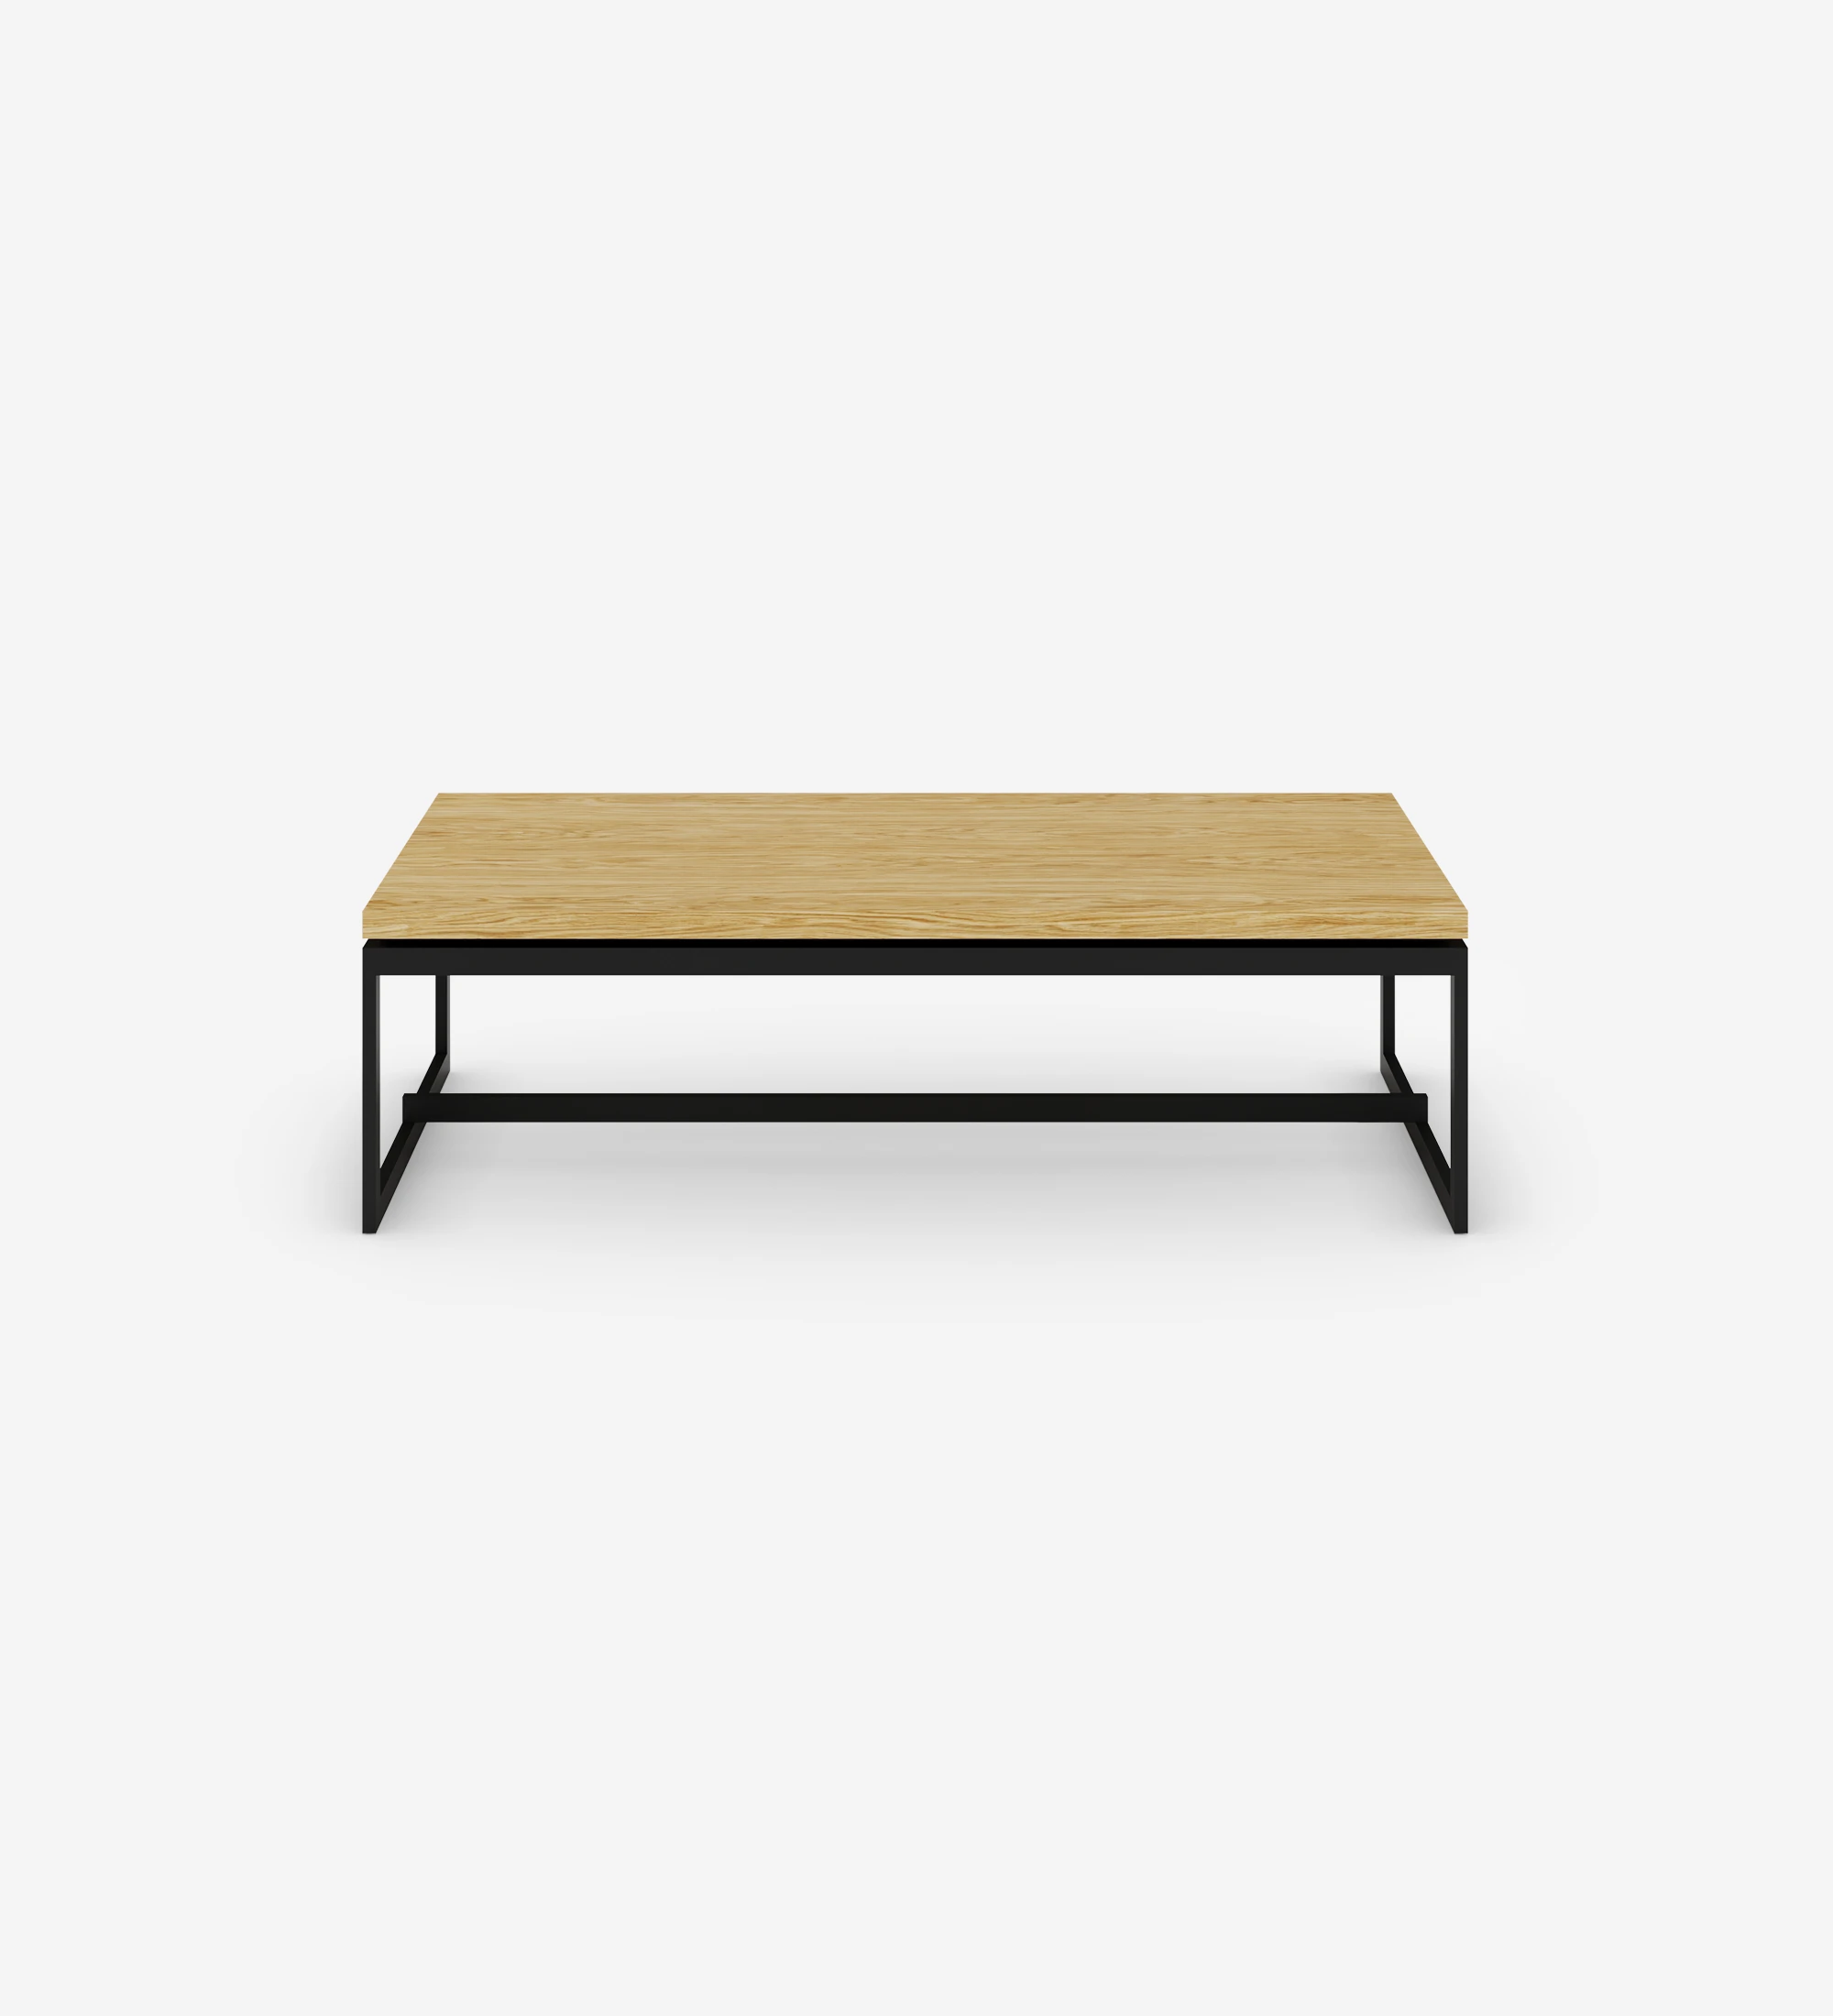 Table basse Chicago rectangulaire, plateau en chêne naturel, pieds en métal laqué noir, 120 x 60 cm.